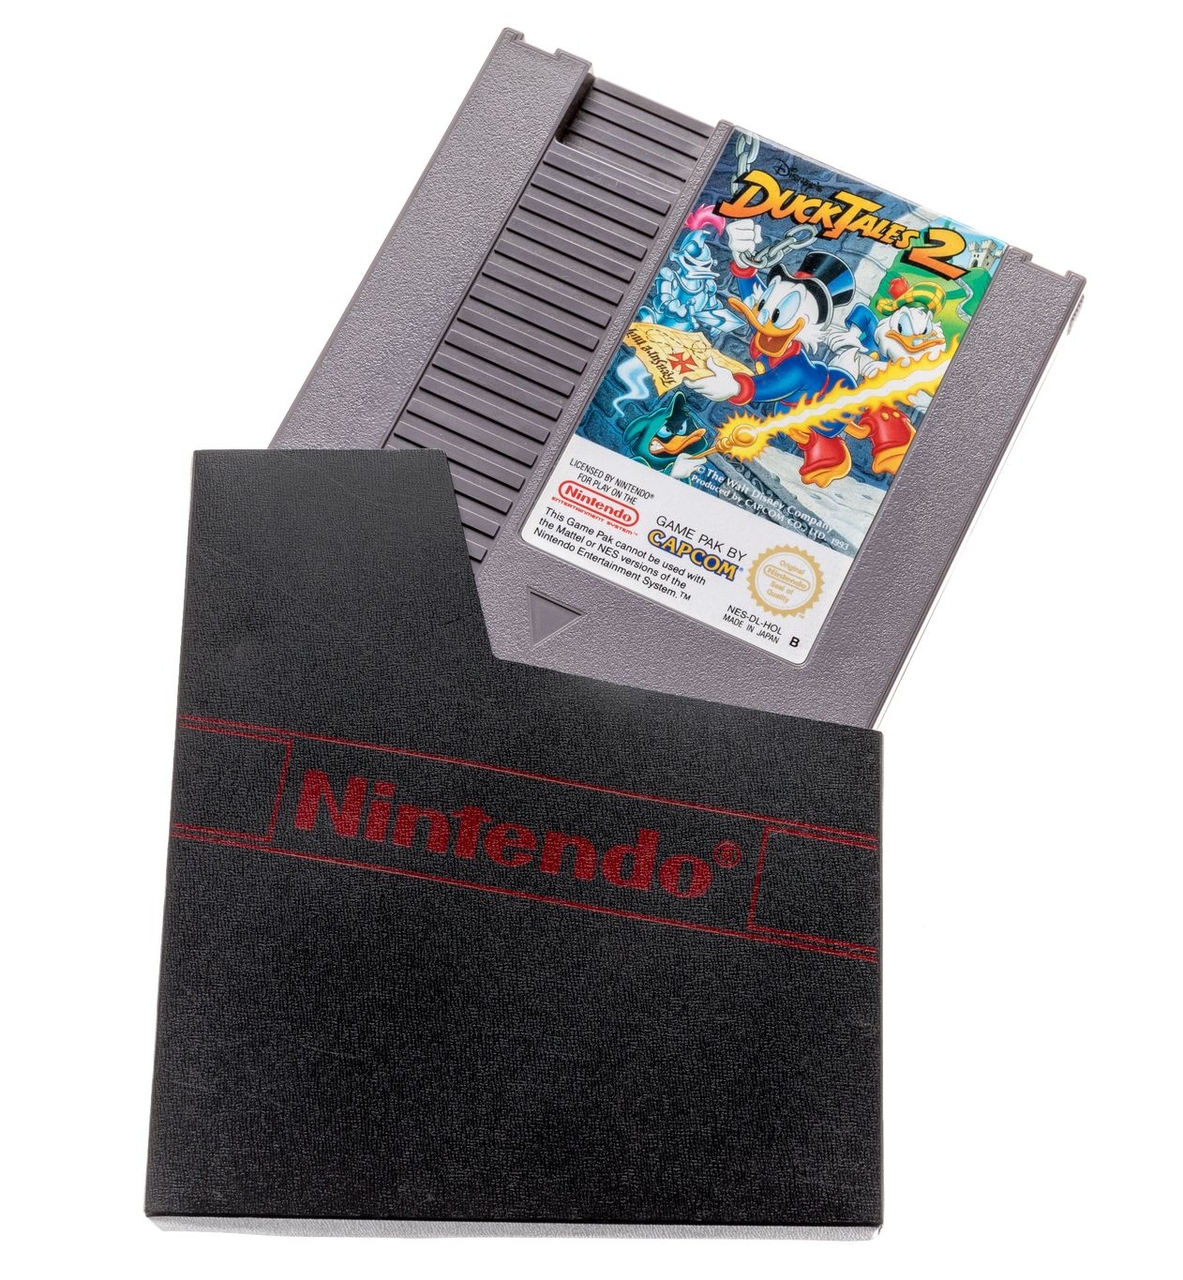 Nintendo NES Dust Cover met Logo | Protectors | RetroNintendoKopen.nl